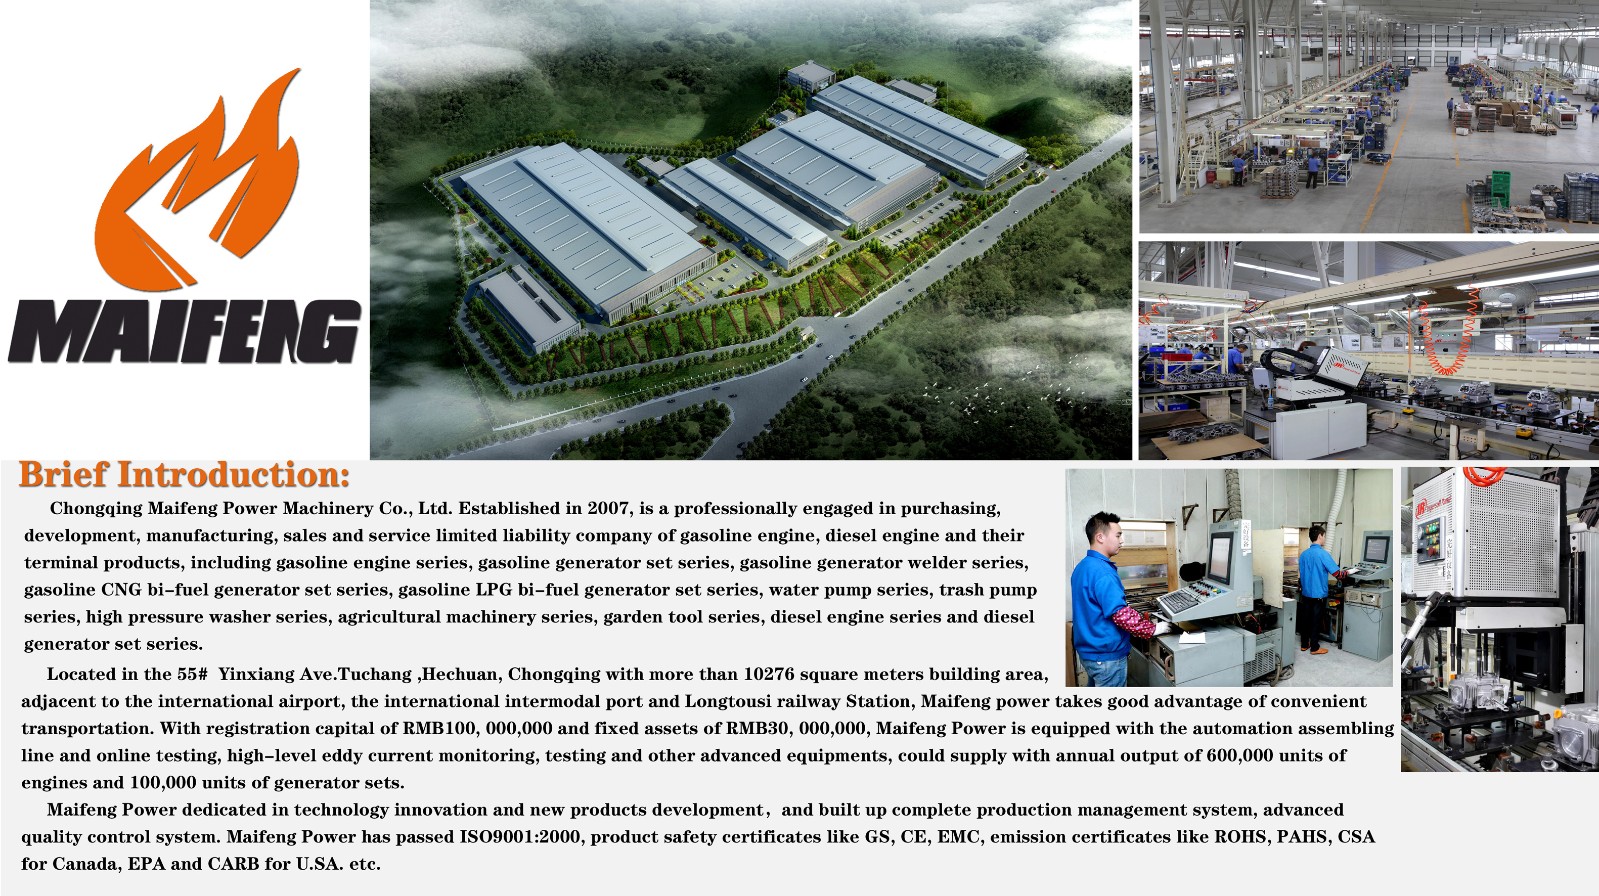 Chongqing Maifeng Power Machinery Co., Ltd.